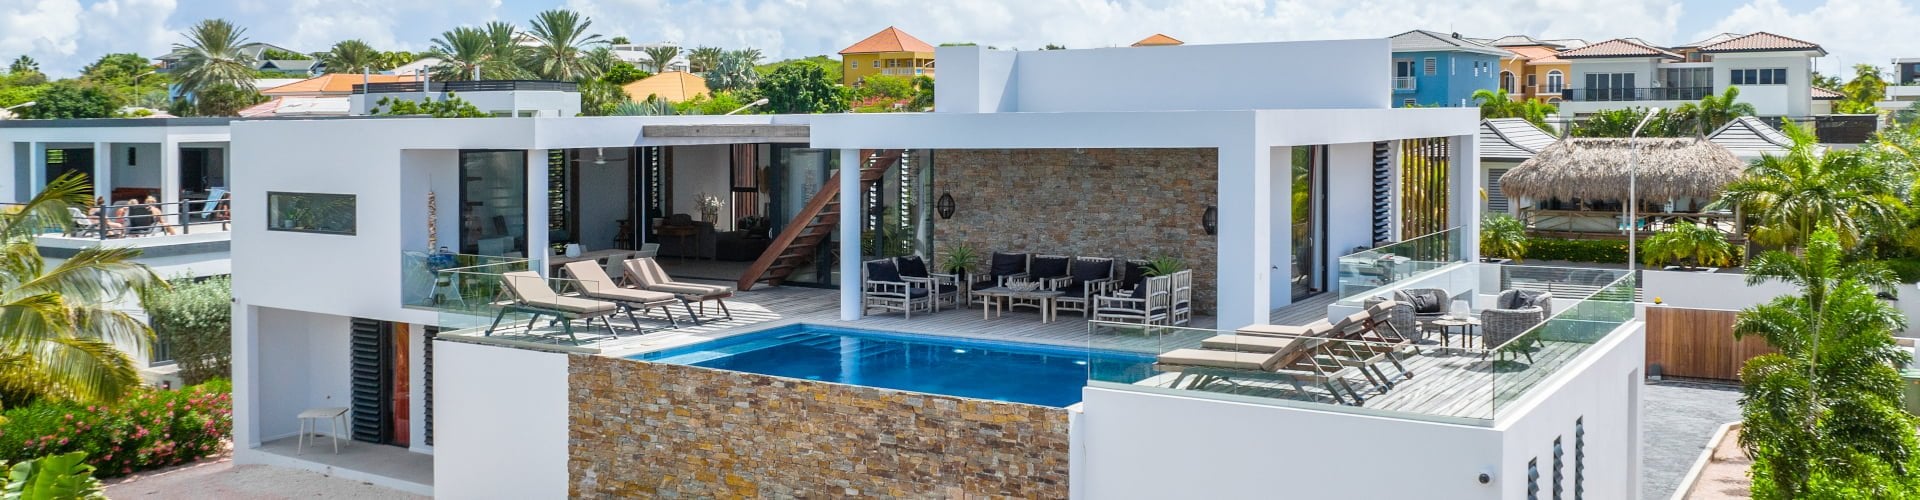 vakantiehuizen te koop Curacao